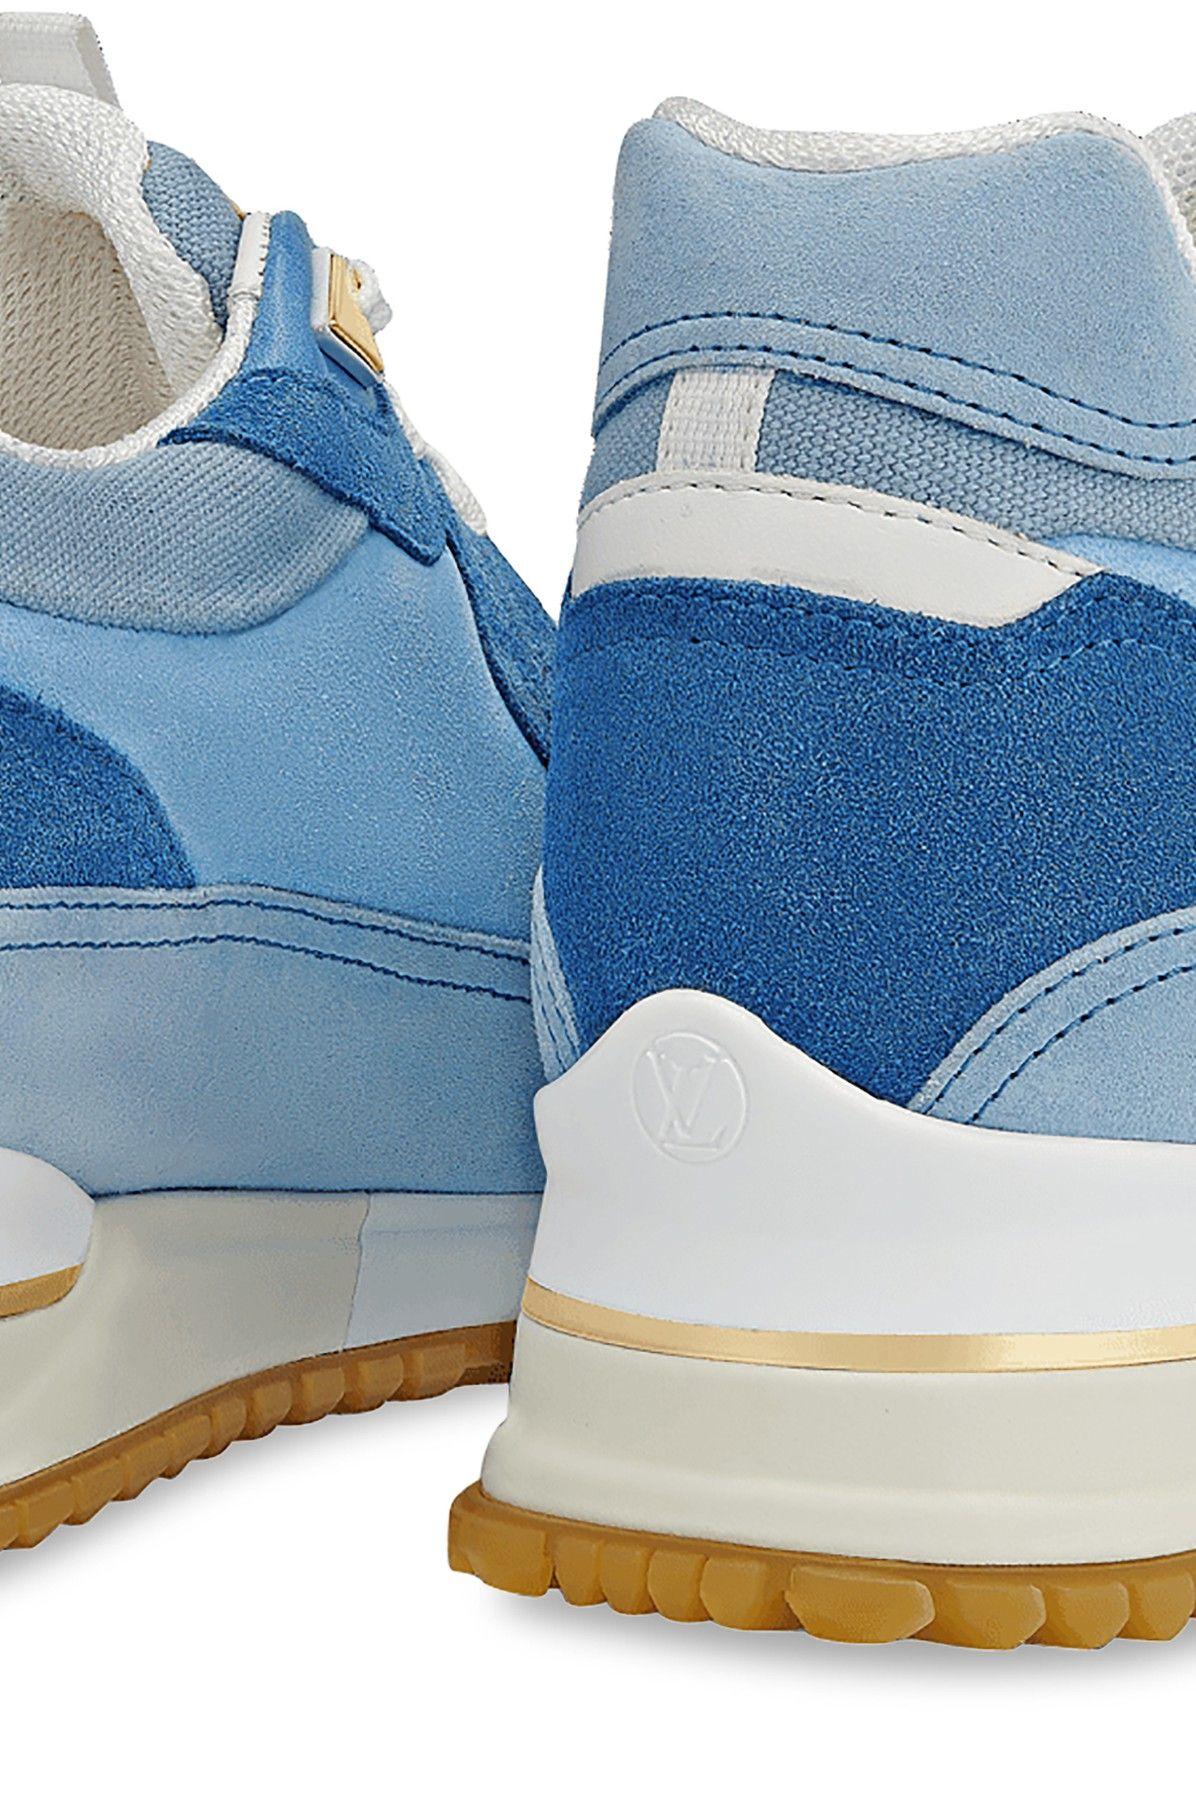 Louis Vuitton, Shoes, Louis Vuitton Calf Suede Logo Run Away Sneaker